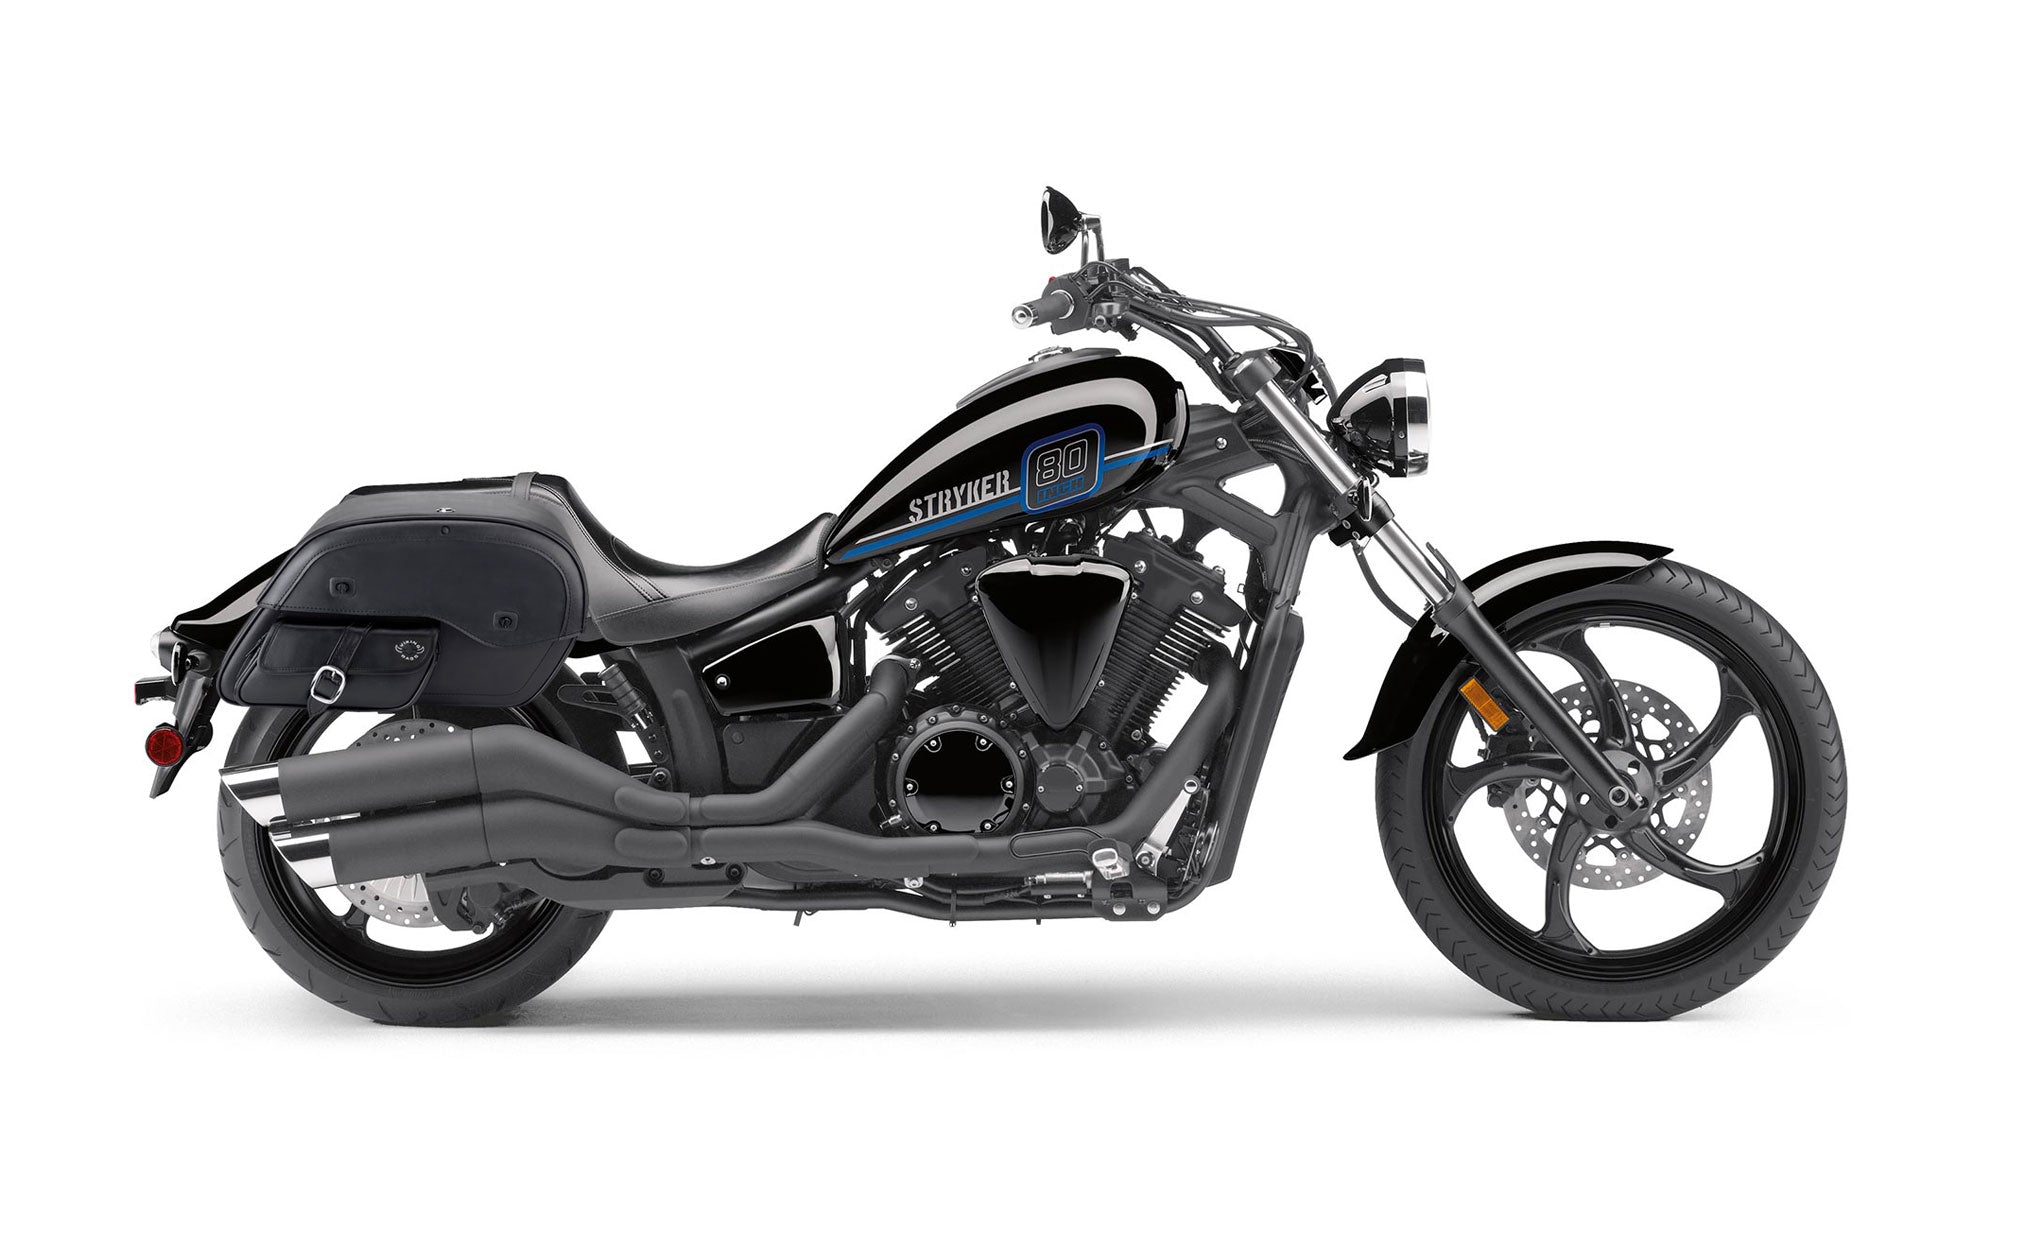 Viking Essential Side Pocket Large Yamaha Stryker Leather Motorcycle Saddlebags on Bike Photo @expand